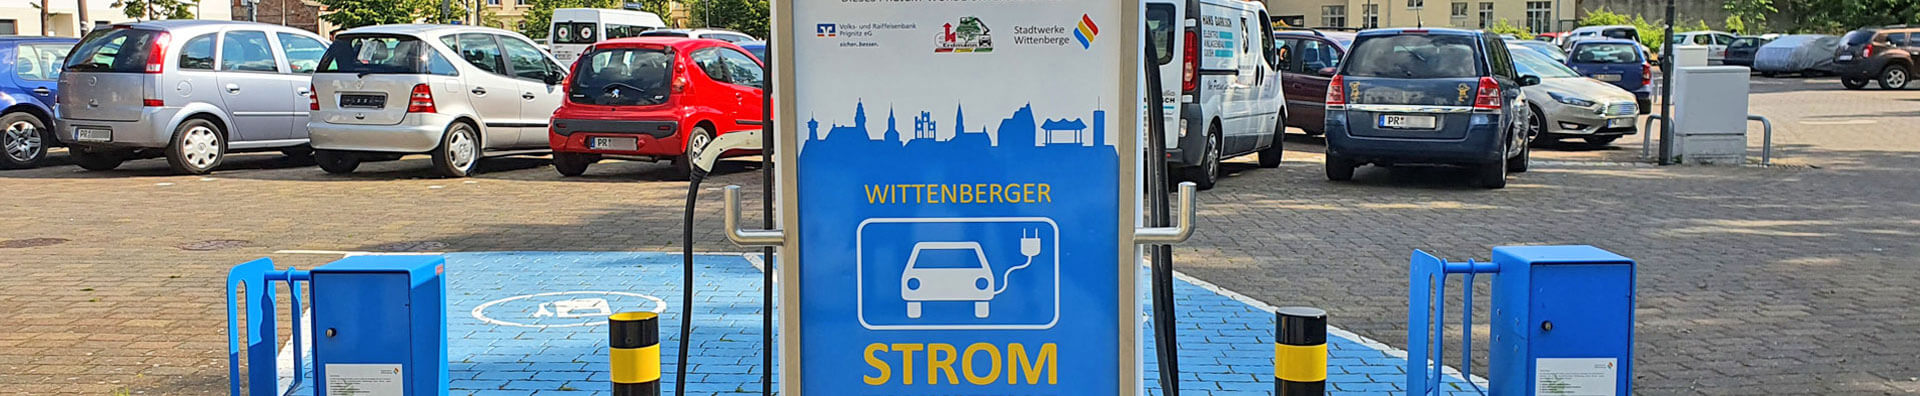 Stadtwerke Wittenberge - Stromtankstelle in der Innenstadt